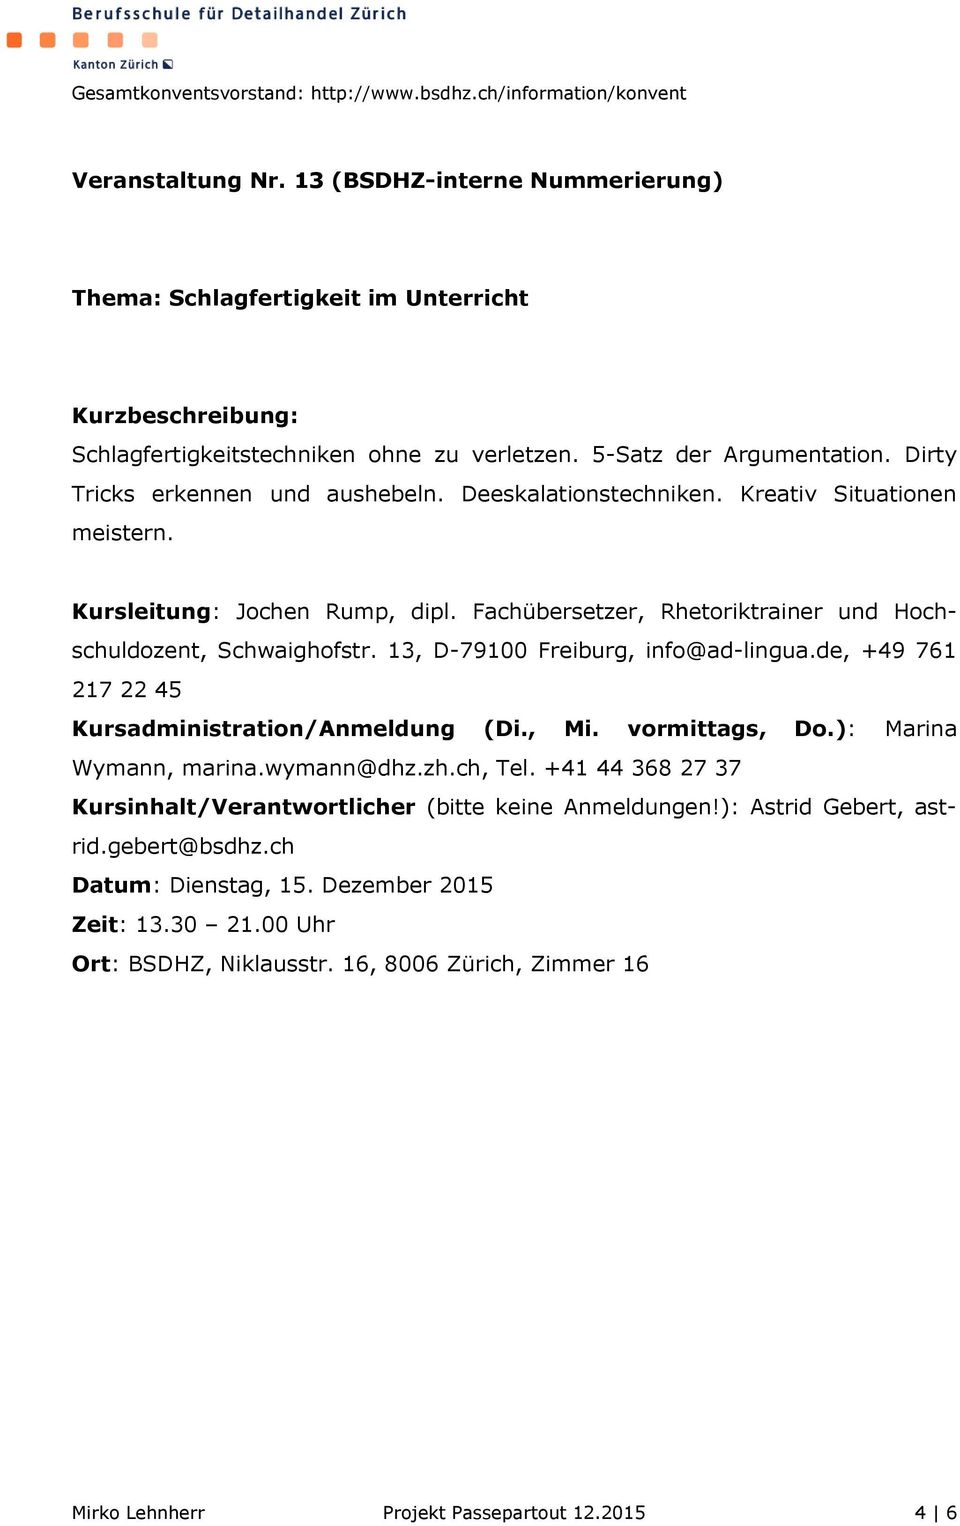 Fachübersetzer, Rhetoriktrainer und Hochschuldozent, Schwaighofstr. 13, D-79100 Freiburg, info@ad-lingua.